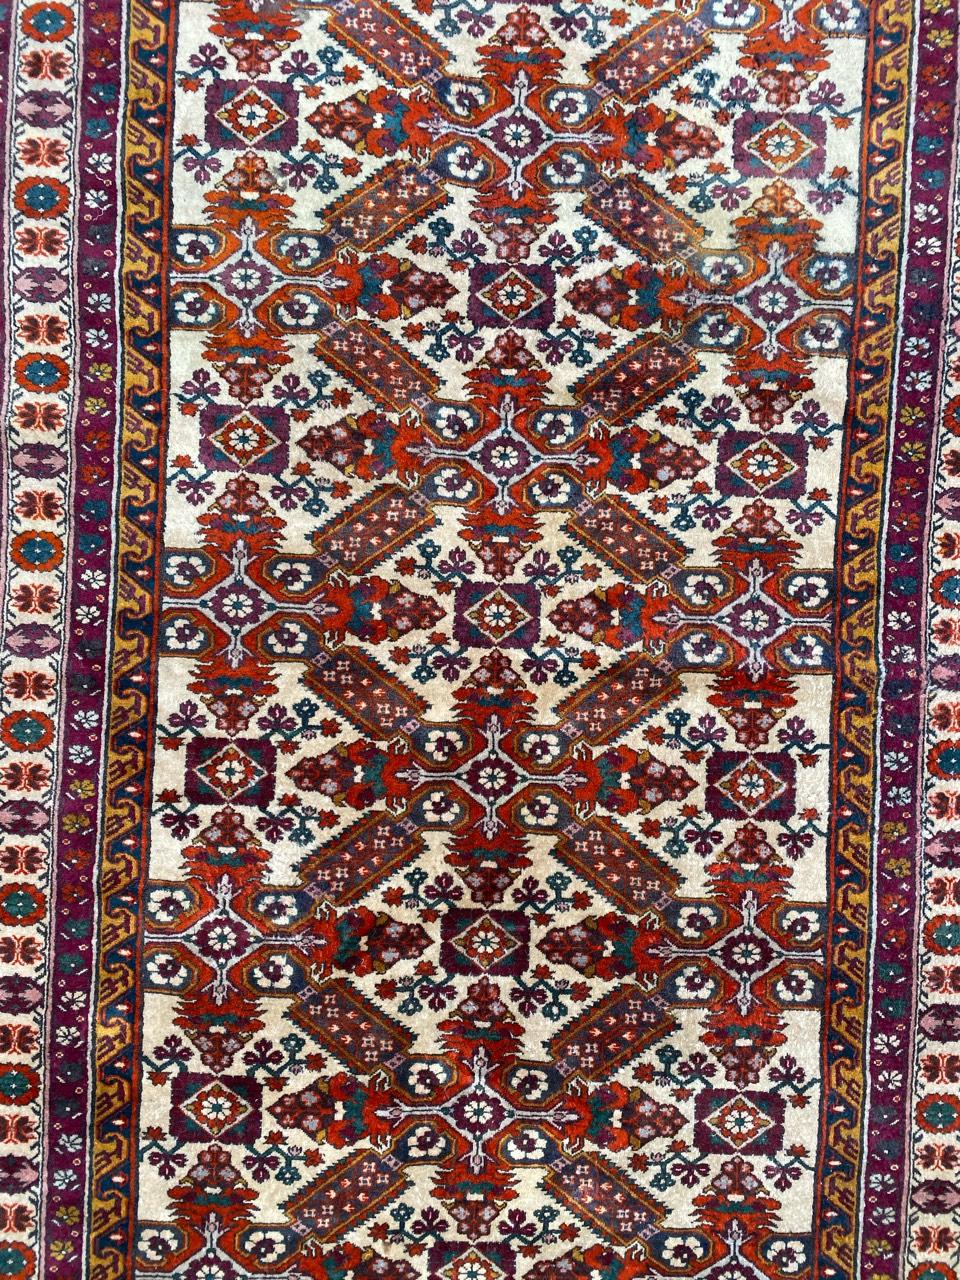 Schöner Schirwan-Teppich aus dem 20. Jahrhundert mit geometrischem Kouba-Muster und schönen Farben in Blau, Grün, Orange und Violett, vollständig und fein handgeknüpft mit Wollsamt auf Baumwollgrund.

✨✨✨
